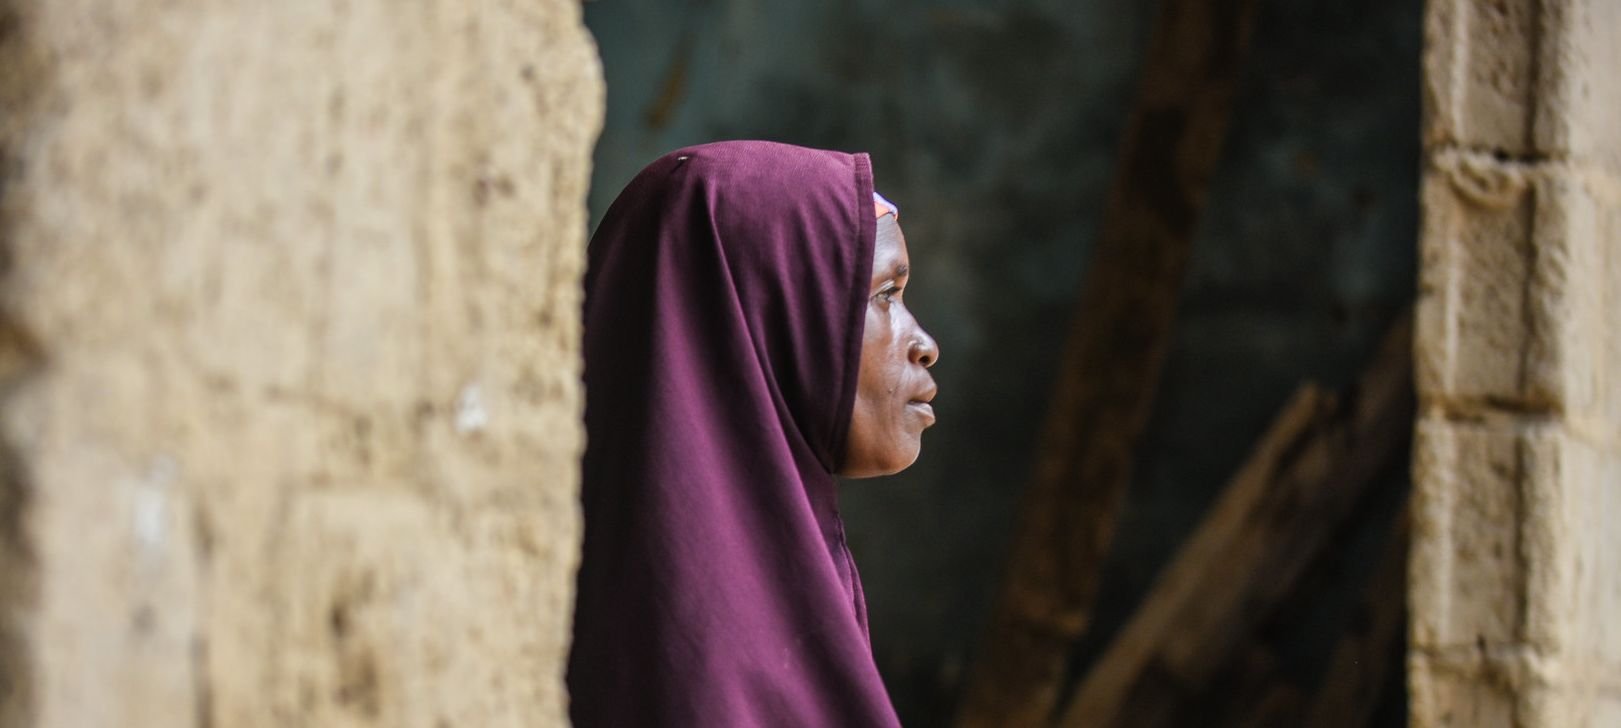 Dans certaines régions du Nigeria, les populations vivent dans une profonde insécurité | photo d'illustration © EU humanitarian aid/Flickr/CC BY-NC-ND 2.0